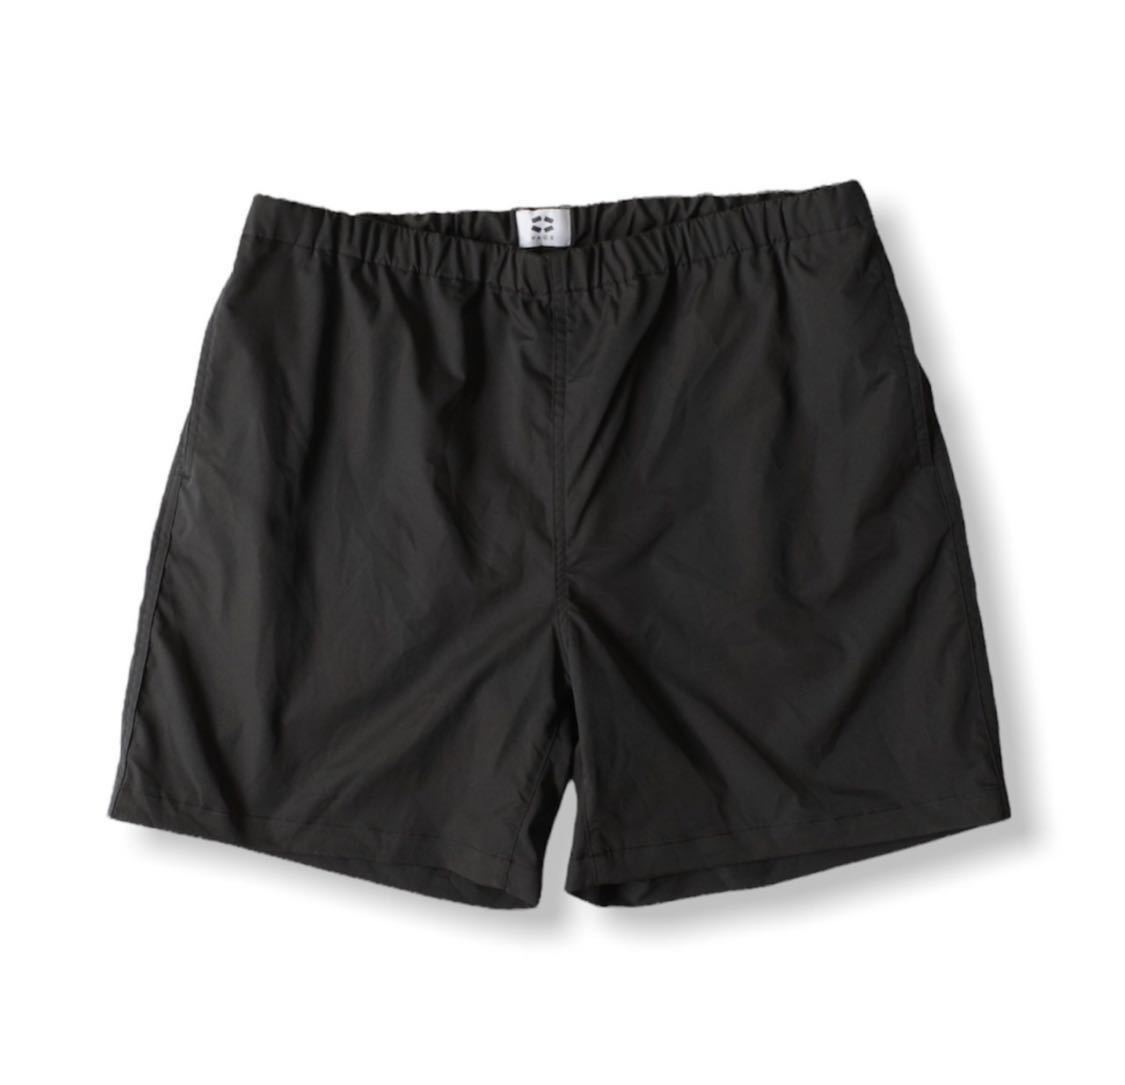 新品未使用 タグ付き PACS SAC PAC Shorts BLACK min-nano ミンナノ ハーフパンツ ショーツ ショートパンツ 